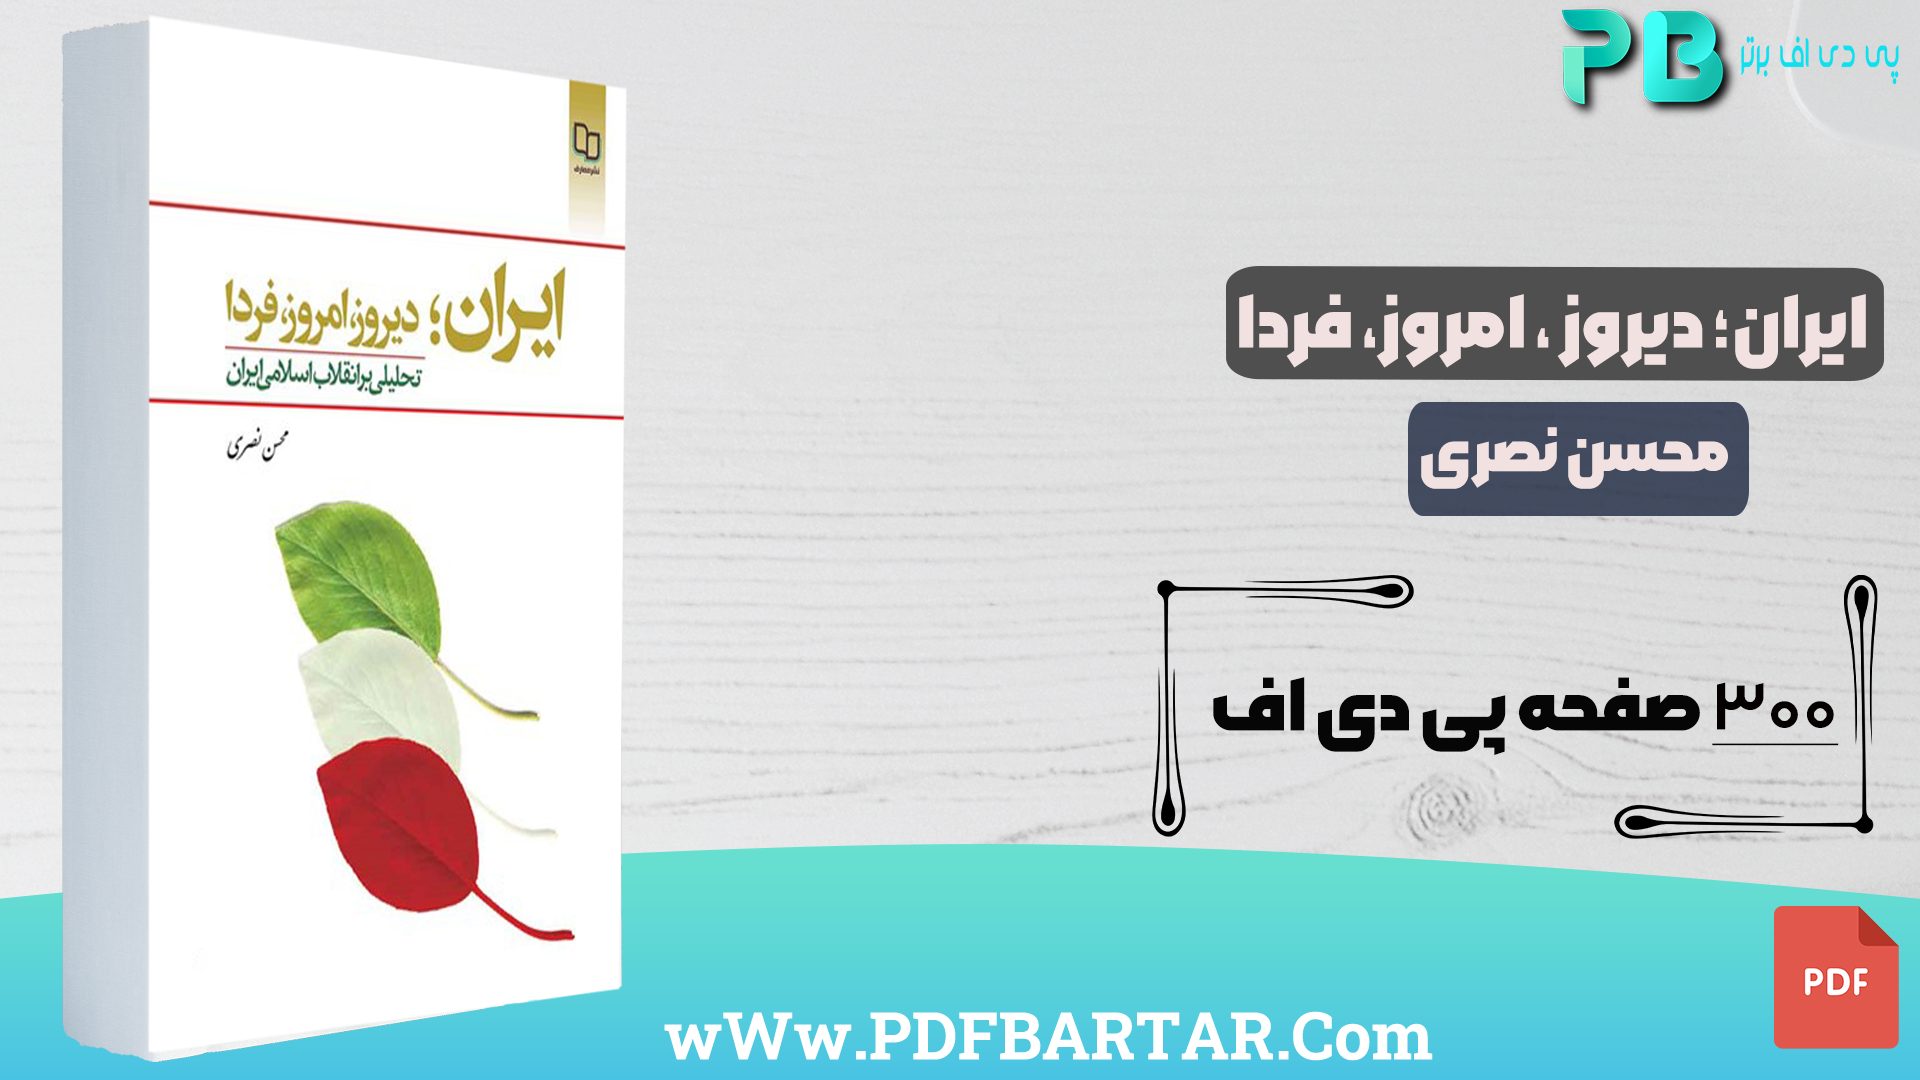 دانلود پی دی اف کتاب ایران؛ دیروز، امروز، فردا محسن نصری PDF - پی دی اف برتر